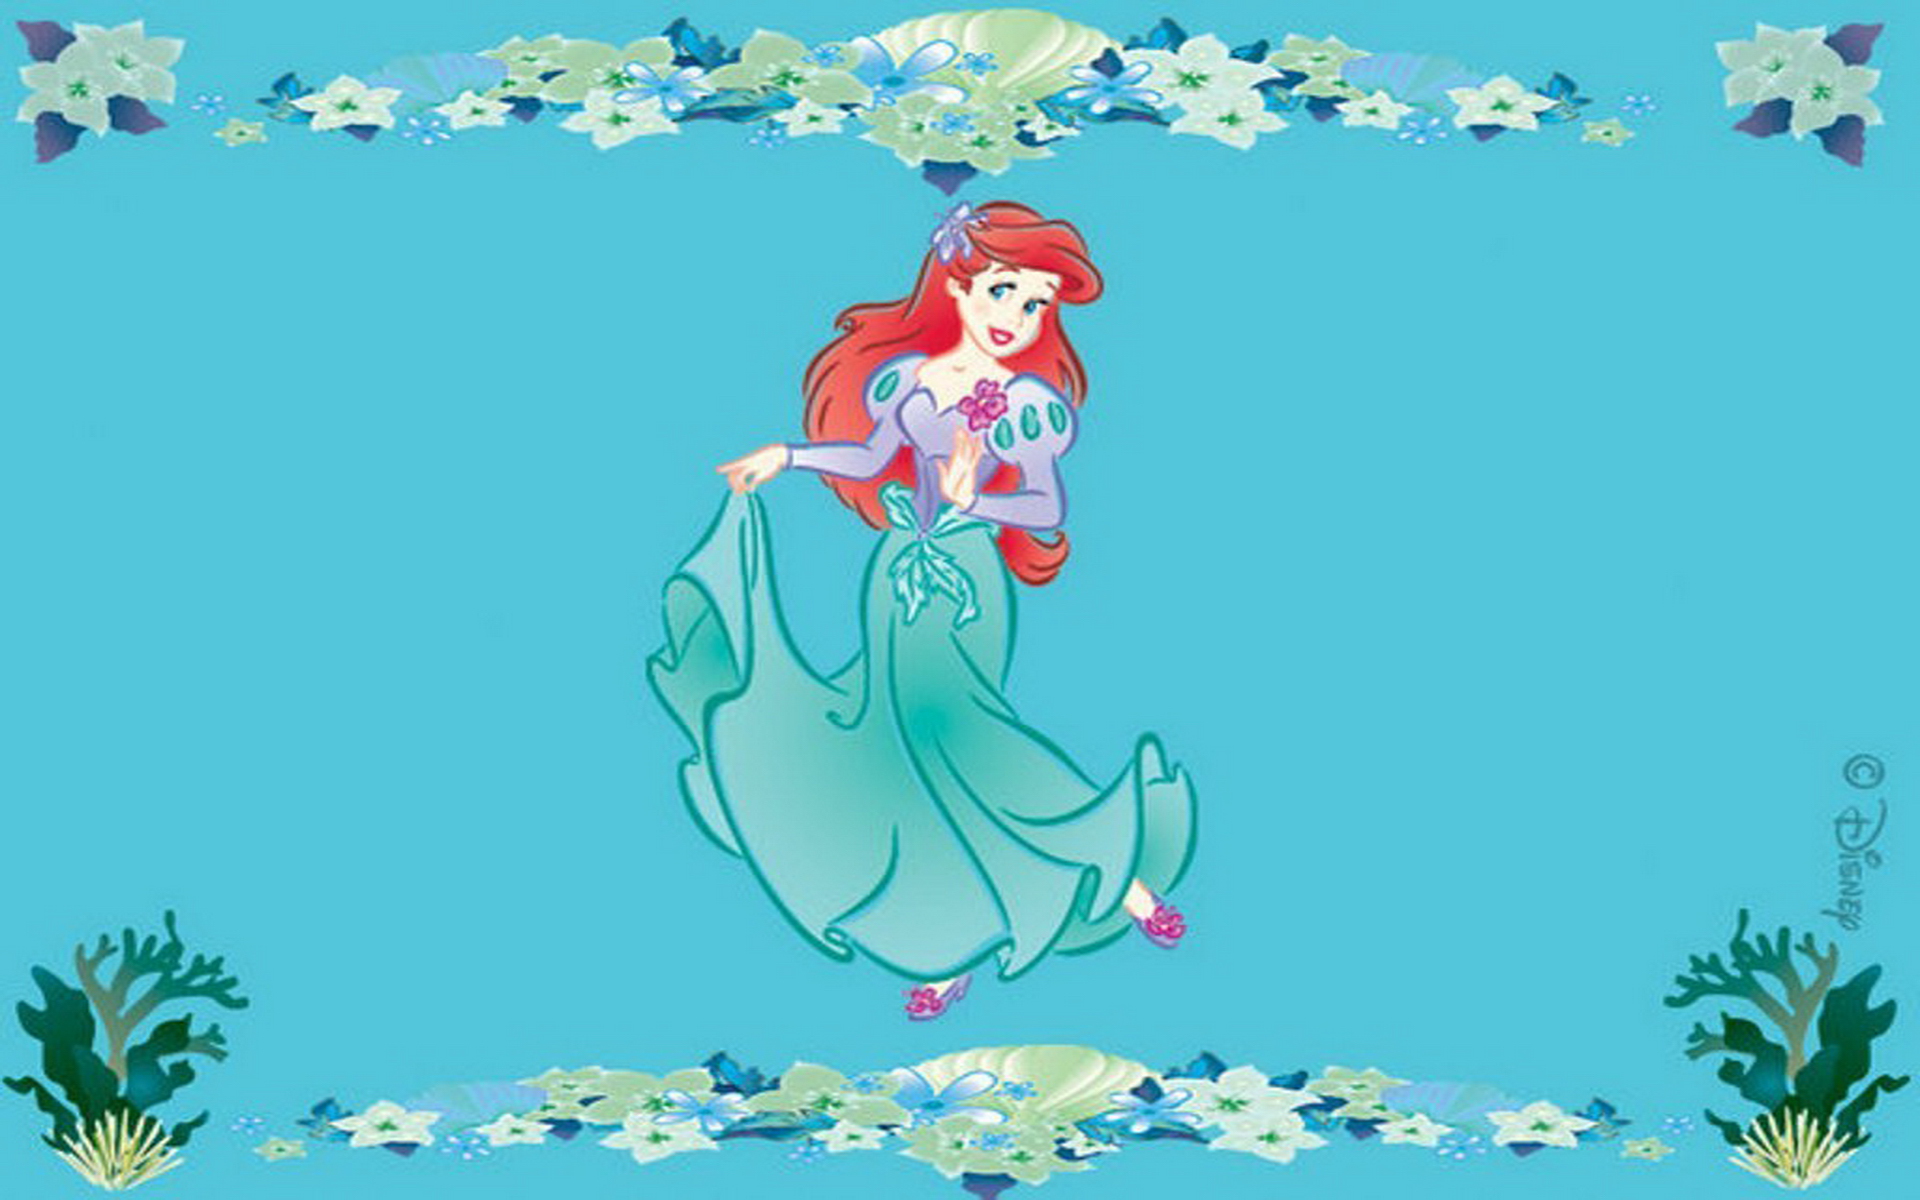 Wallpaper HD Widescreen Desktop Background Princess Ariel Disney